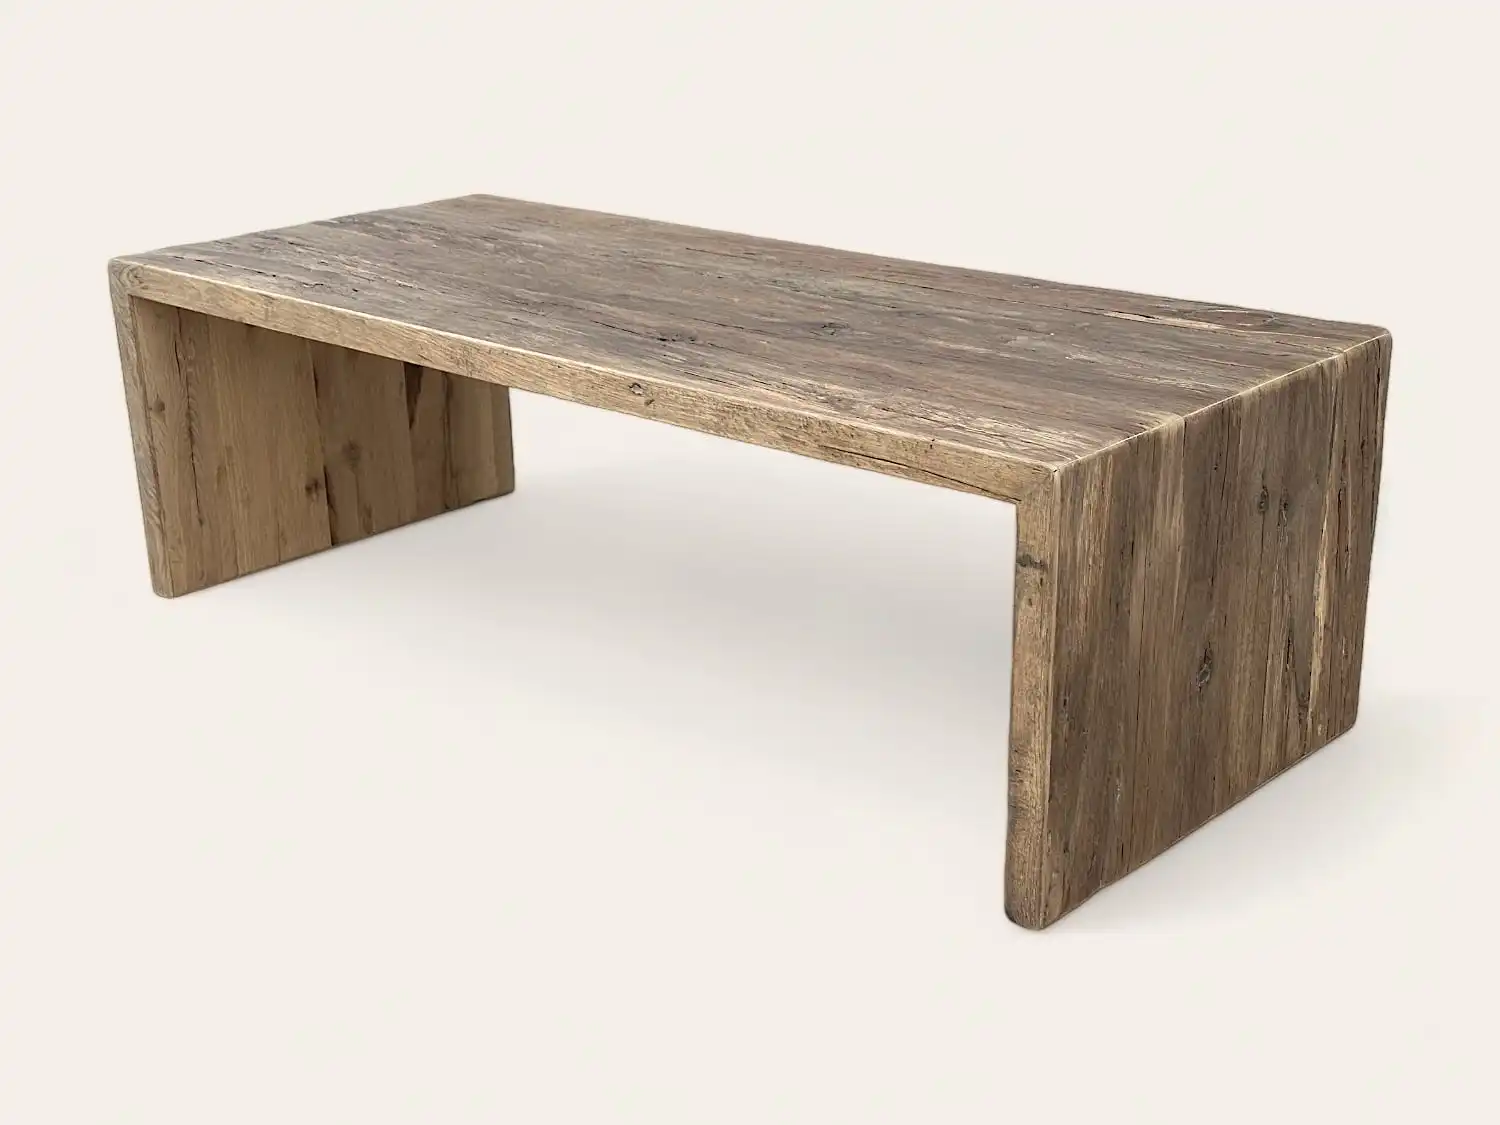 Une table à manger rustique en bois avec un plateau en bois ancien.